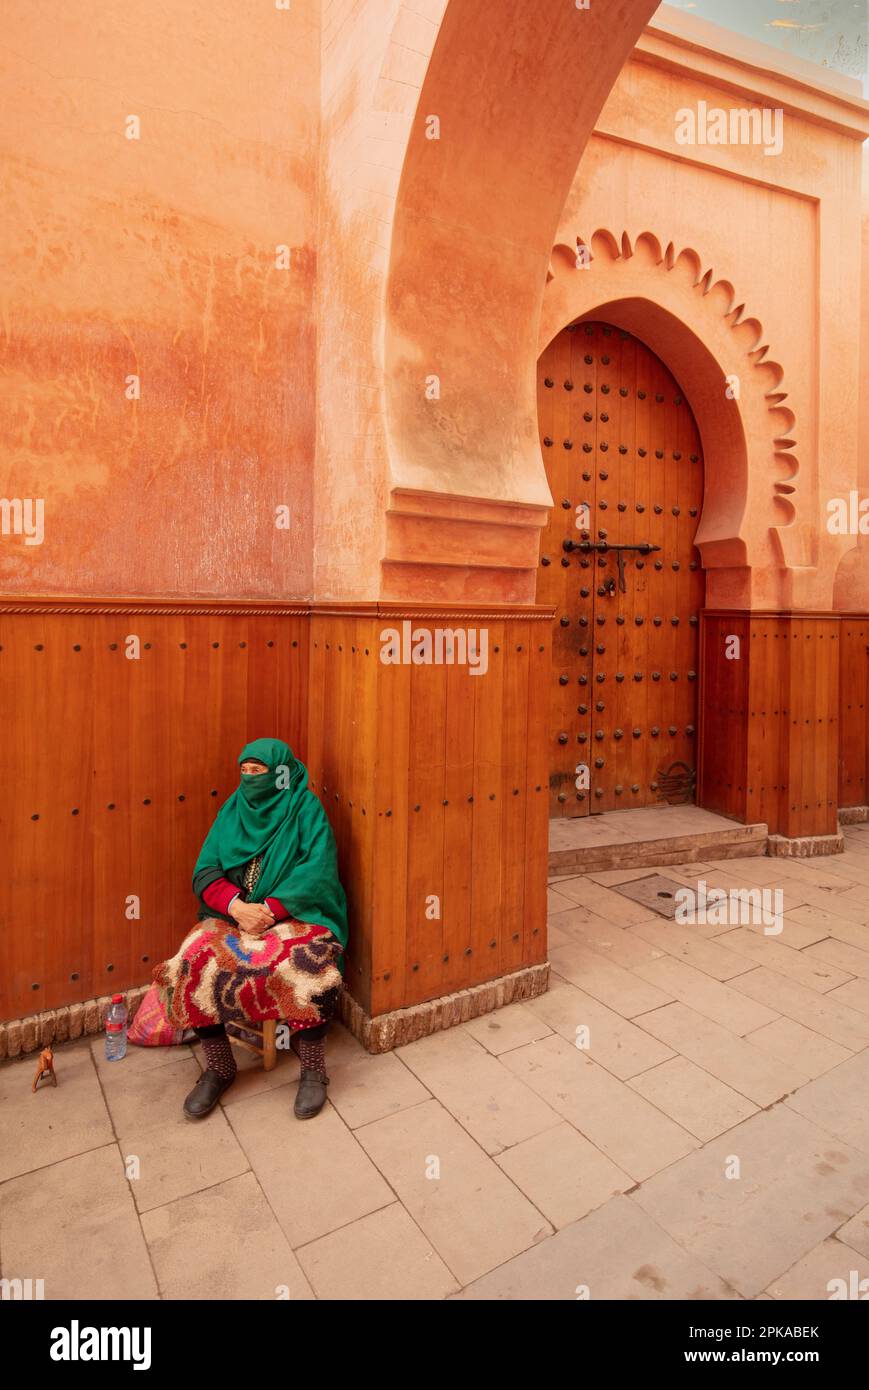 Maroc, Marrakech, Madersa Ben Youssef madrasa, architecture fine, femme assise avec voile vert devant le bâtiment orange brun Banque D'Images